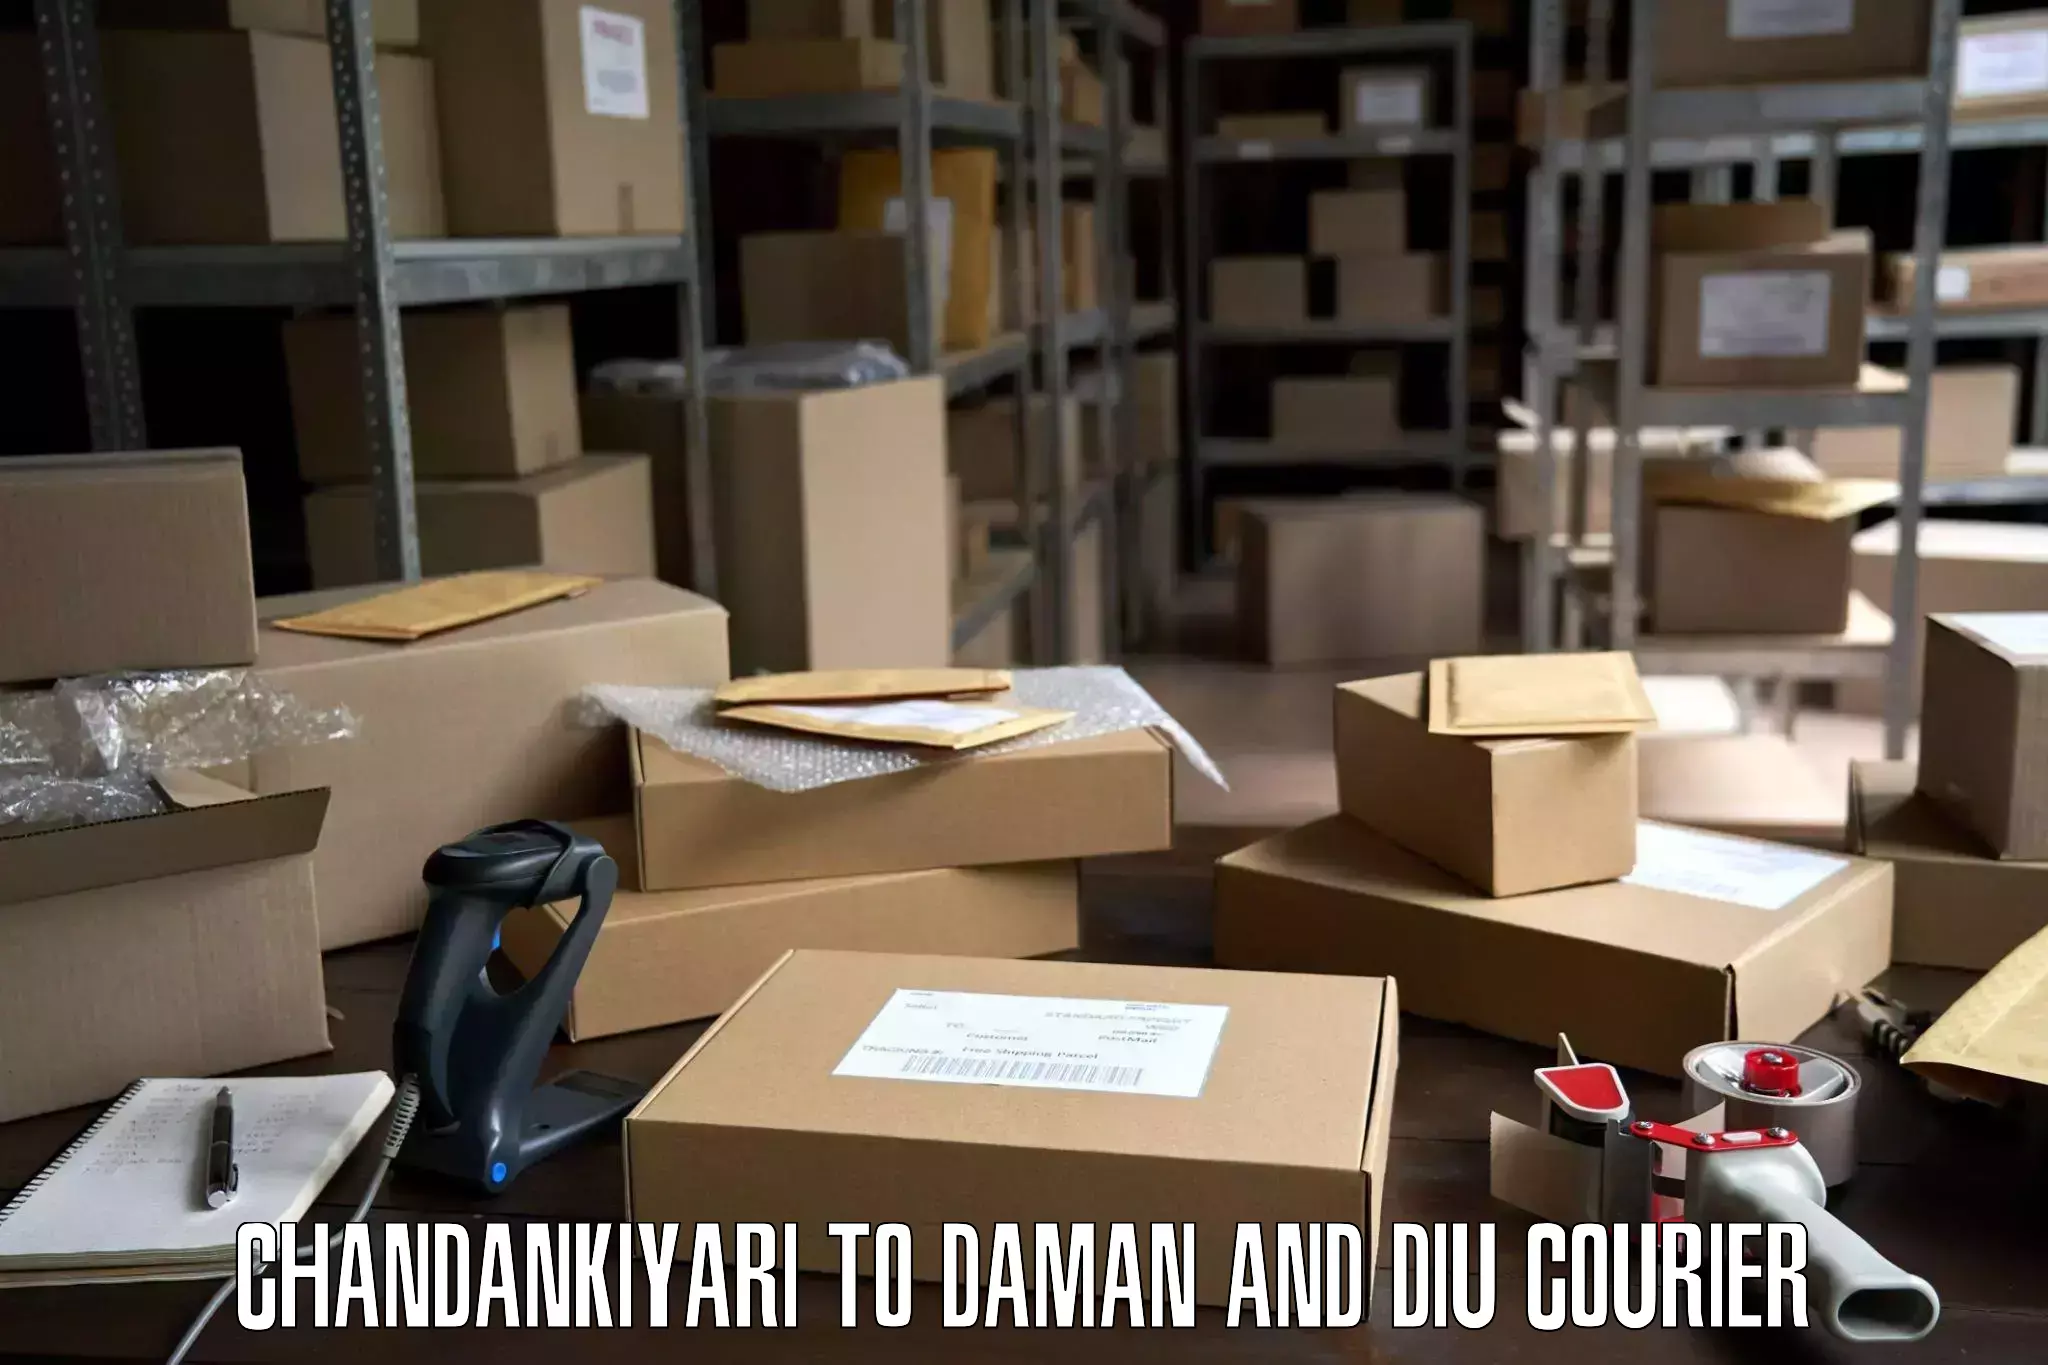 Furniture transport specialists Chandankiyari to Daman and Diu